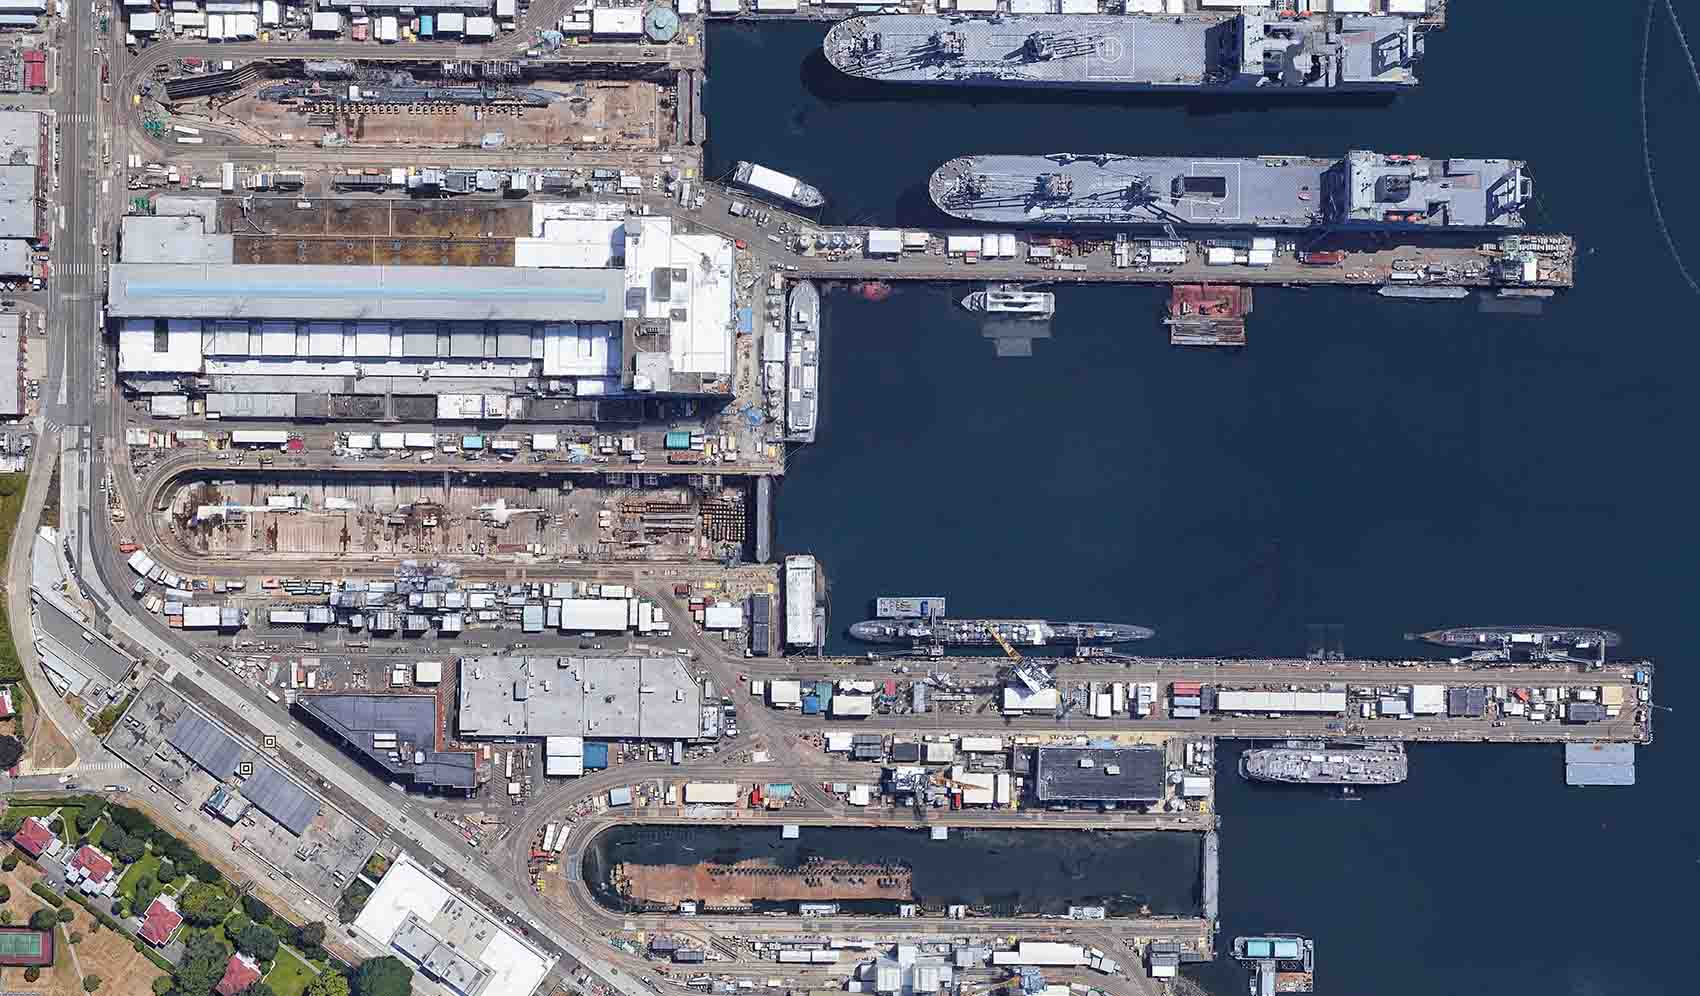 Puget Sound Naval Shipyard Modernization